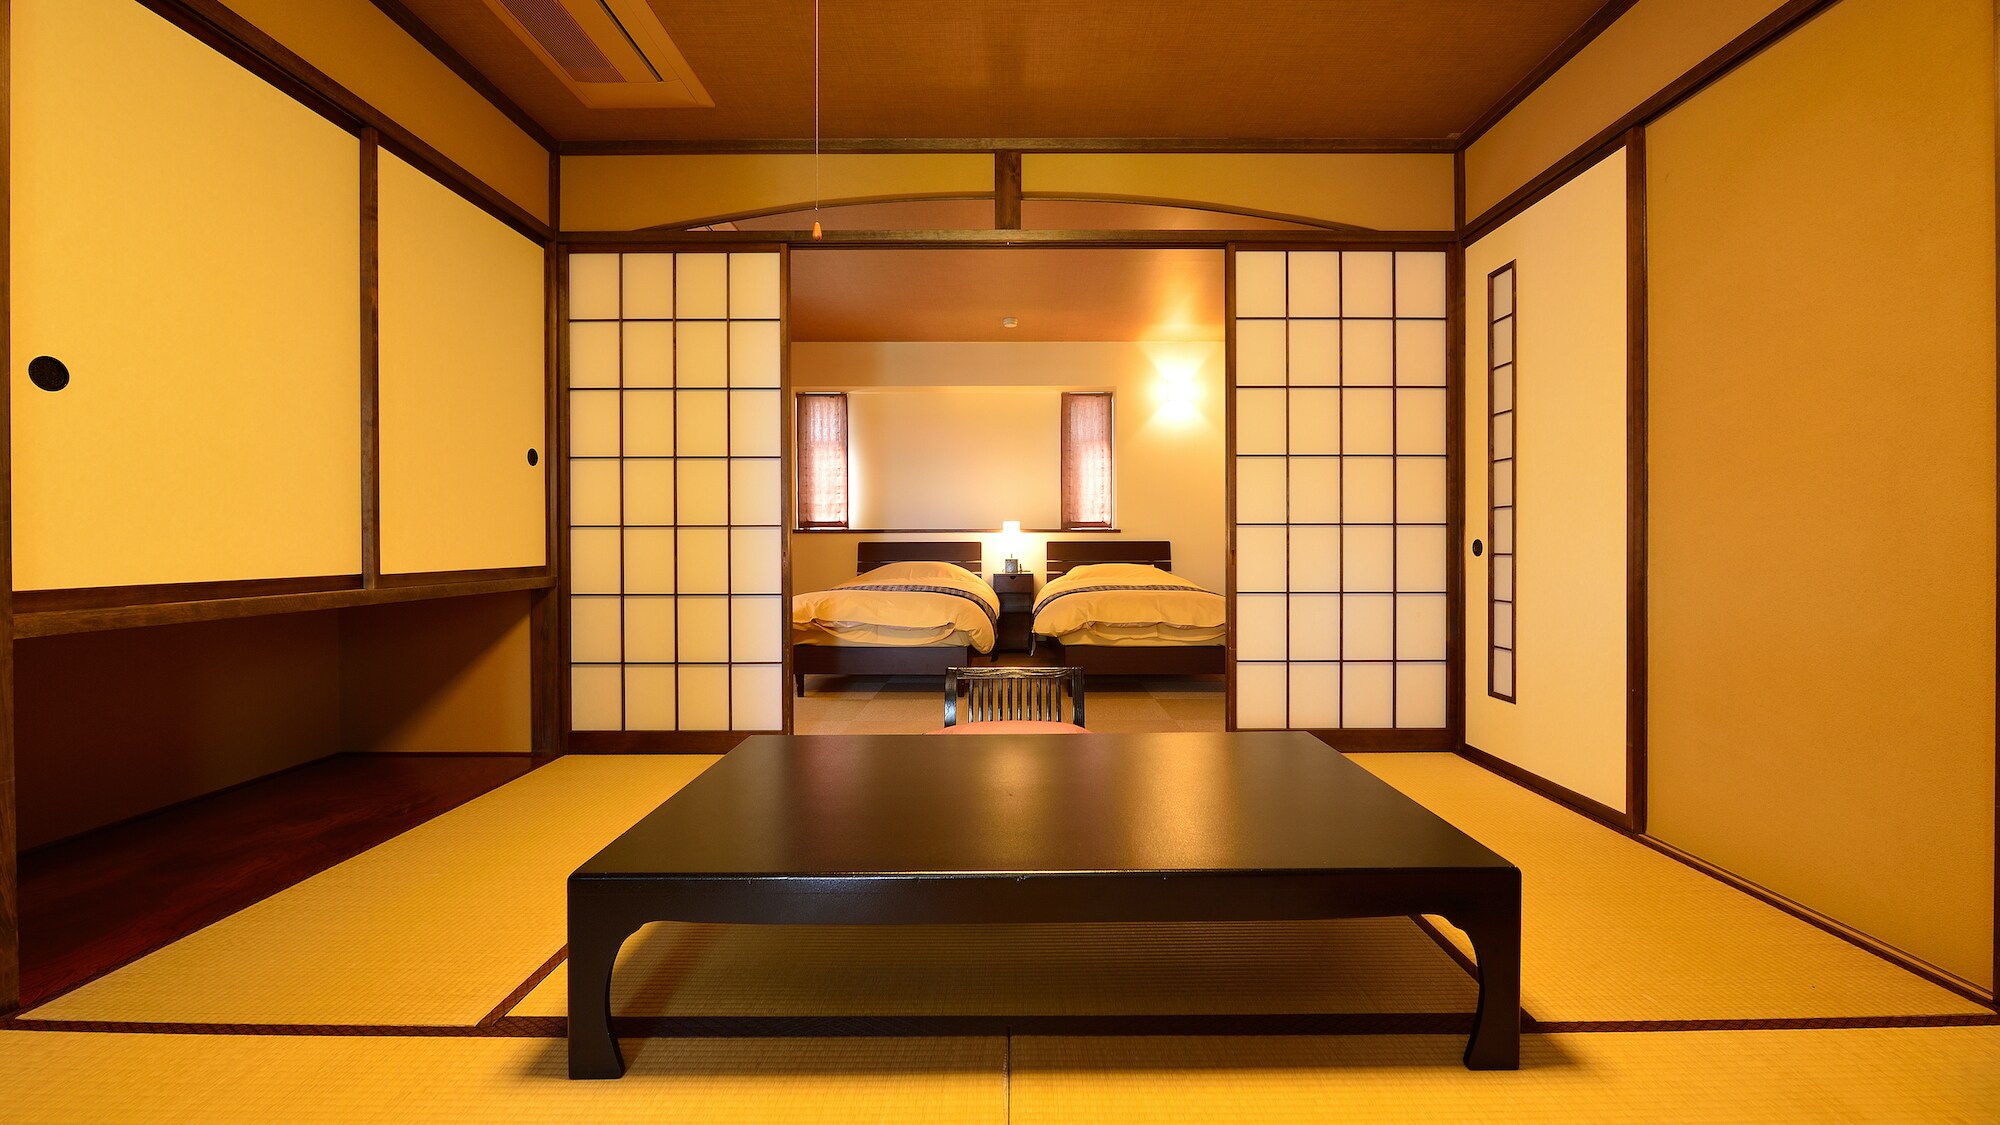 Kamar Jepang dan Barat (8 tikar tatami + kamar twin)